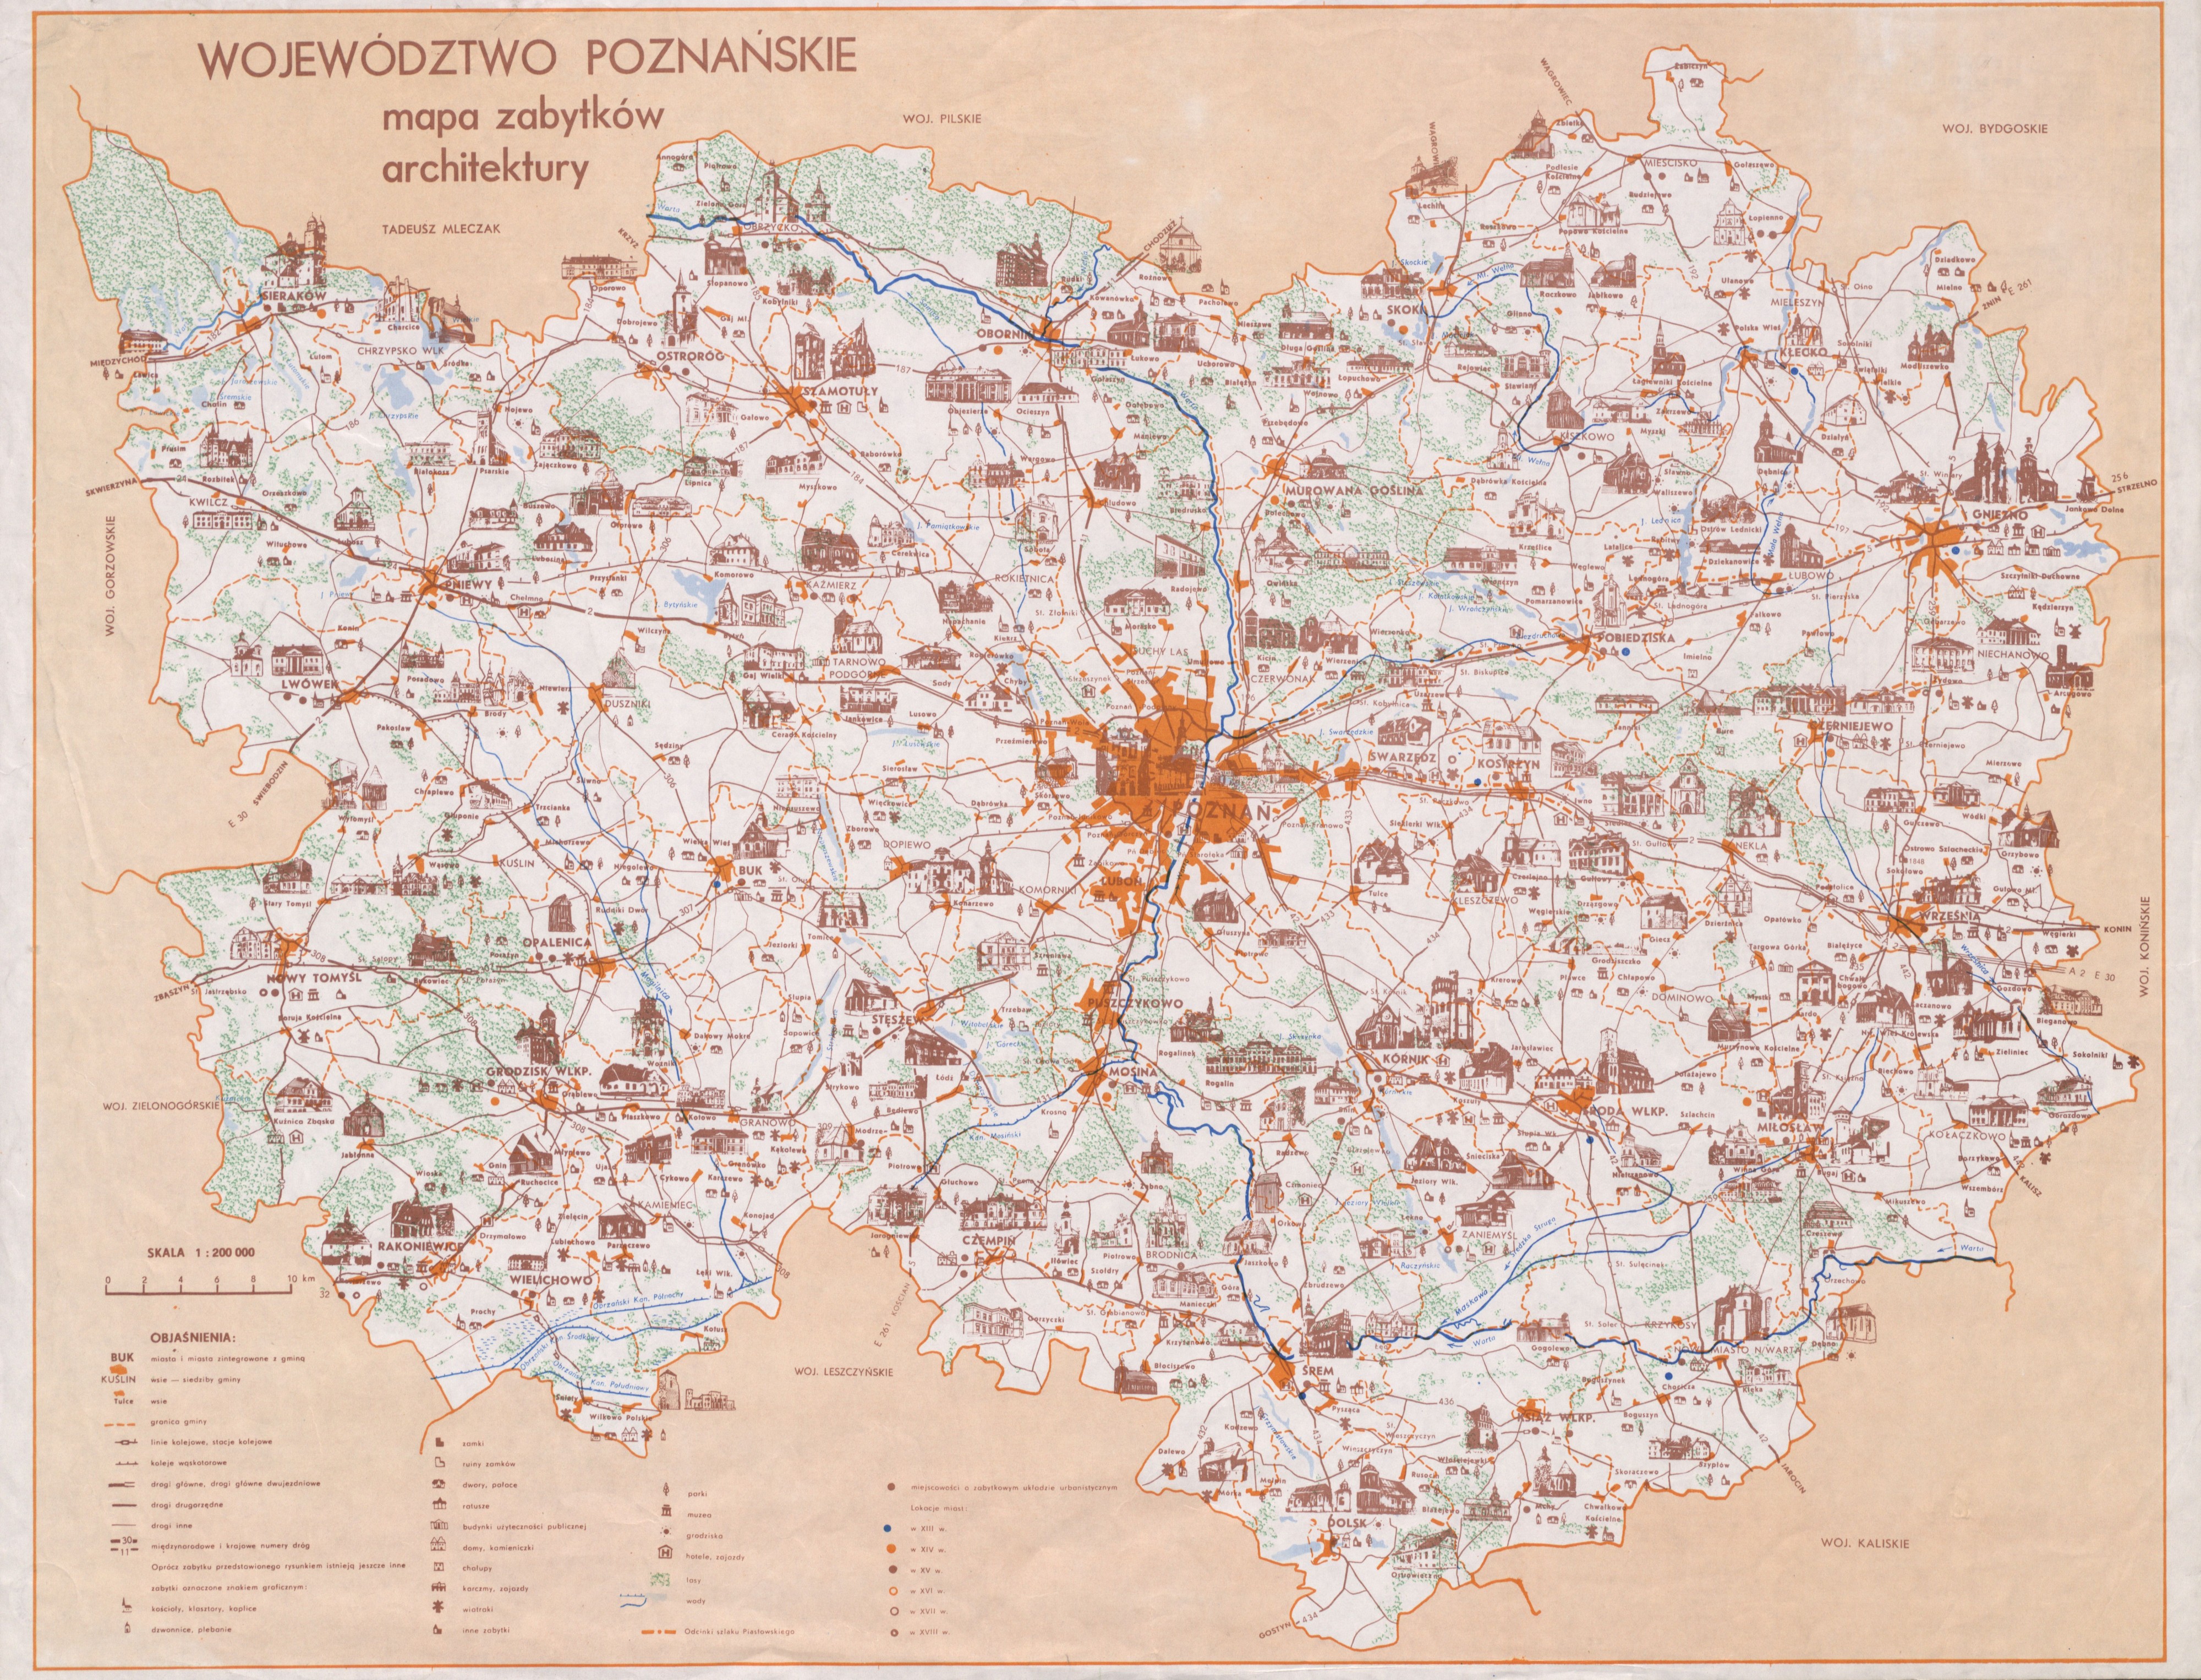 Mapa zabytków w województwie poznańskim